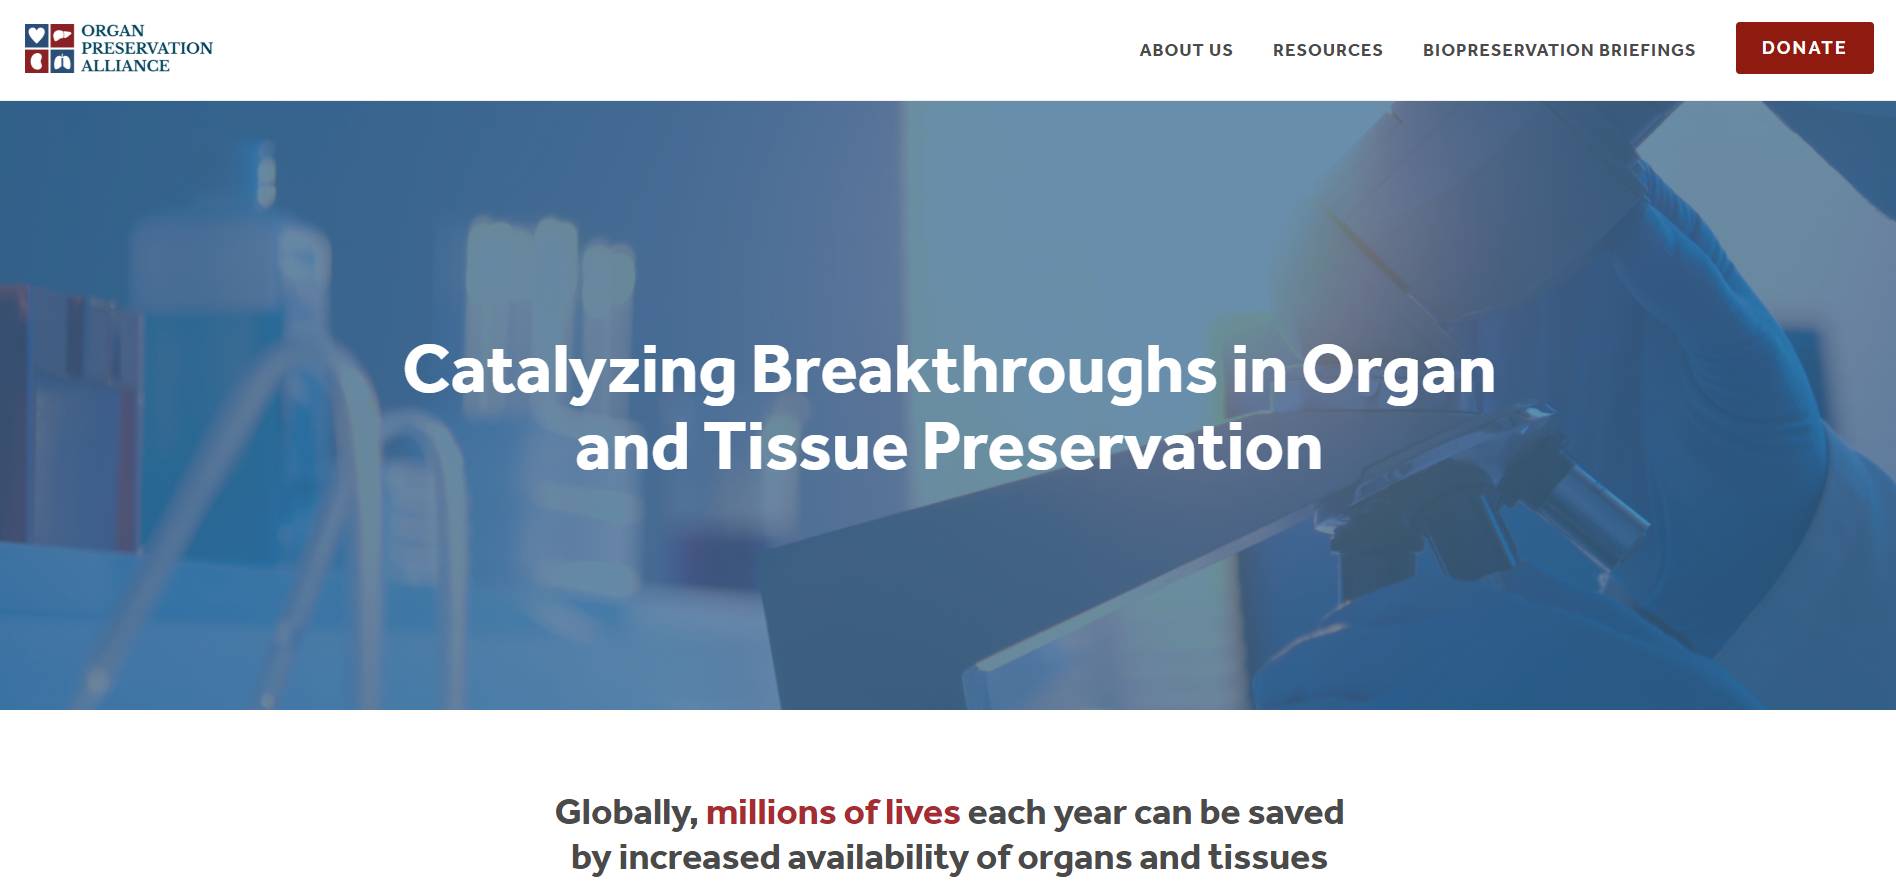 Organ Preservation Alliance